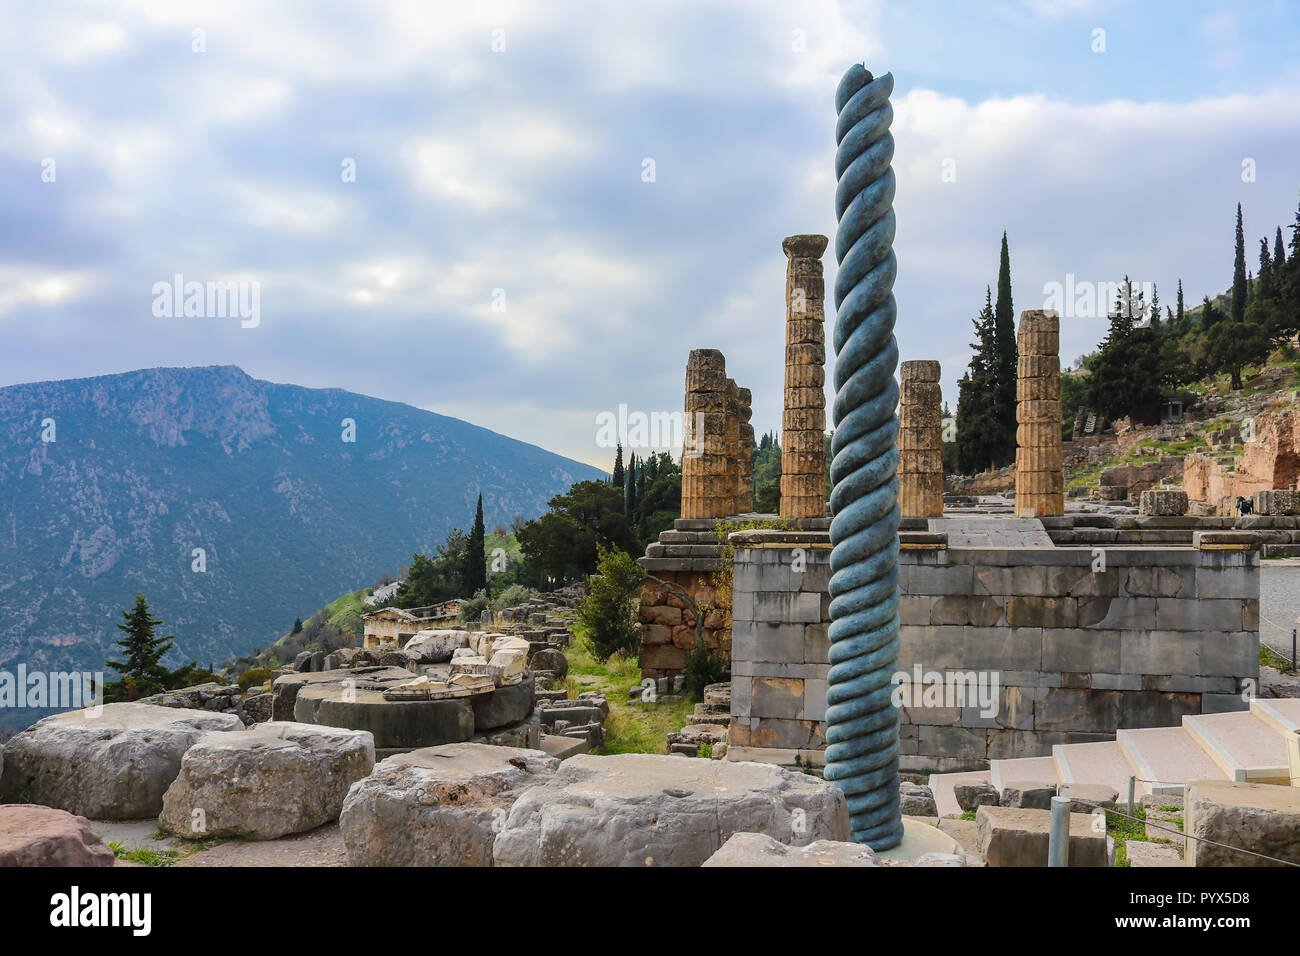 Vista del sito di montagna di antica Grecia Delphi con twisted colonna nella parte anteriore del Tempio di Apollo con un tesoro giù per la collina e un altra montagna Foto Stock